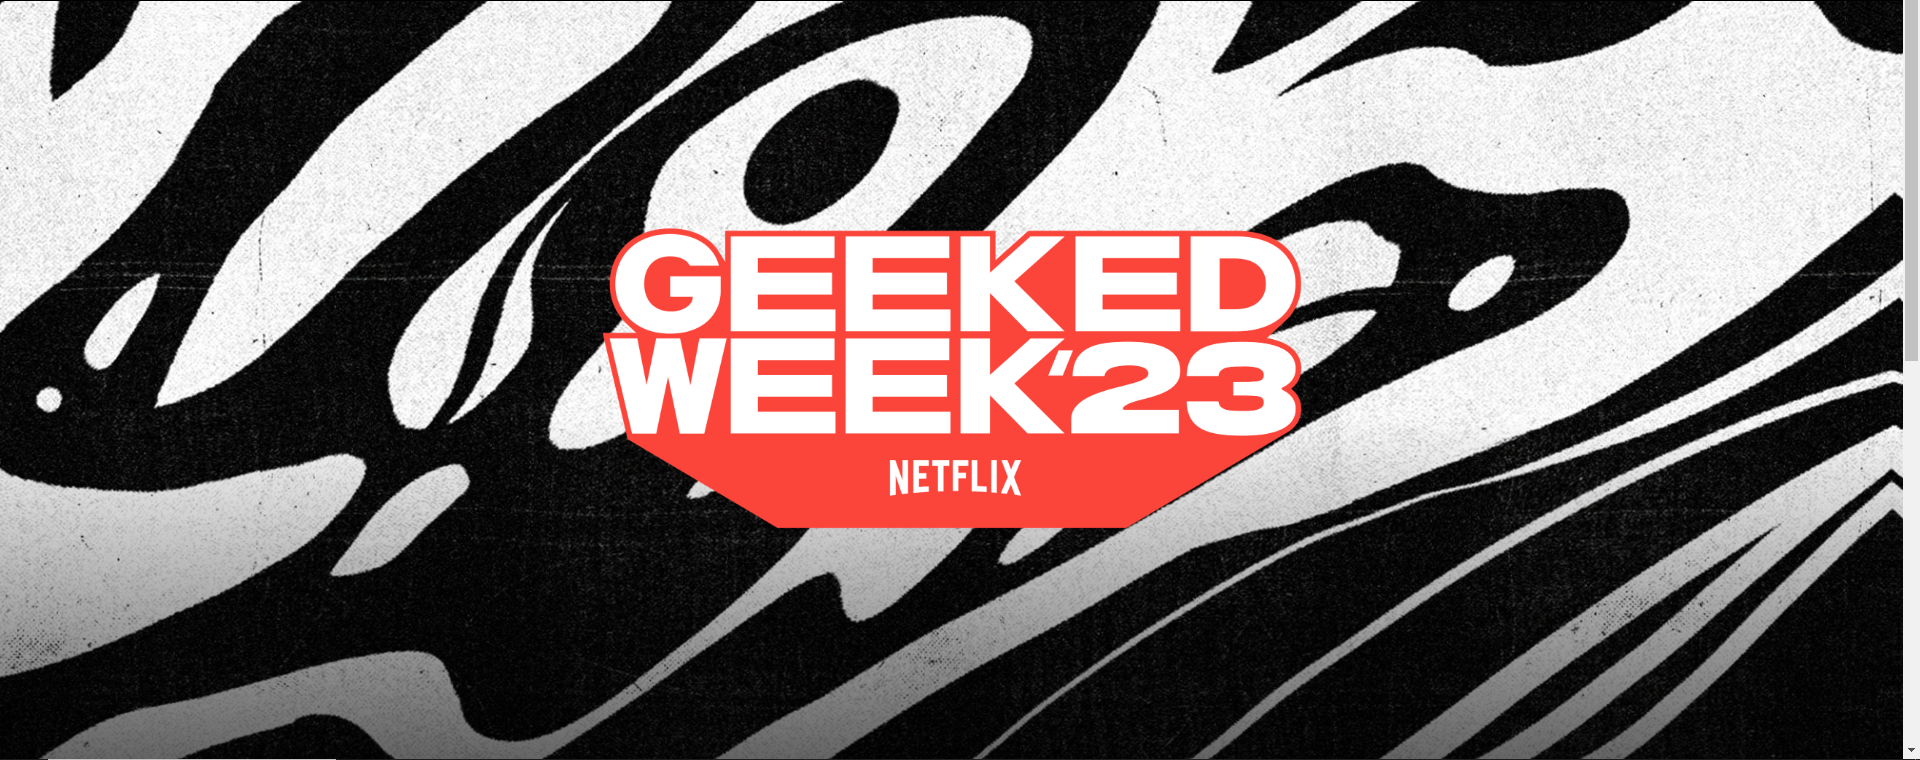 Netflix Geeked Week '23